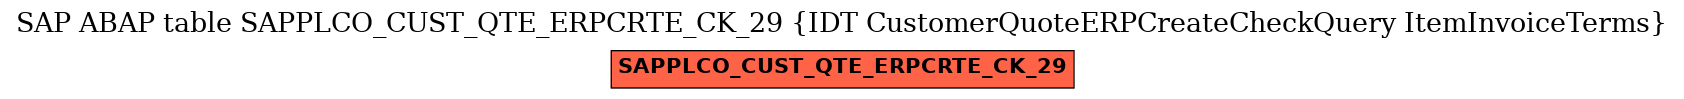 E-R Diagram for table SAPPLCO_CUST_QTE_ERPCRTE_CK_29 (IDT CustomerQuoteERPCreateCheckQuery ItemInvoiceTerms)